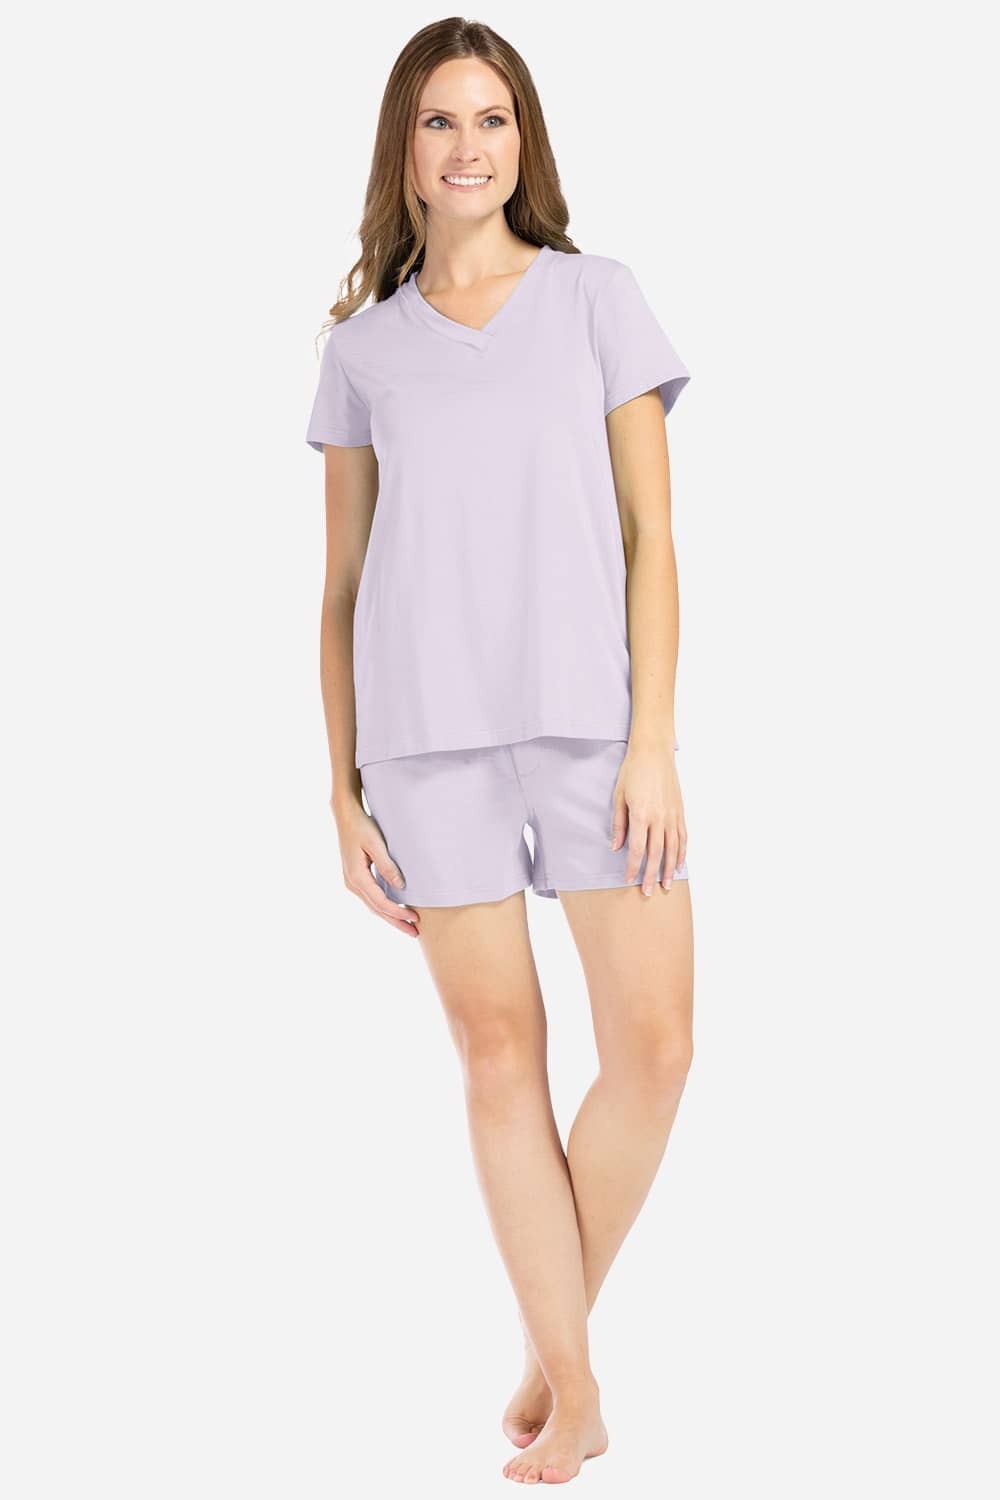 Women Short Sleeve Sleep Shirt Tee Pajama Top Sleep Dress Nightgown  Nightshirt